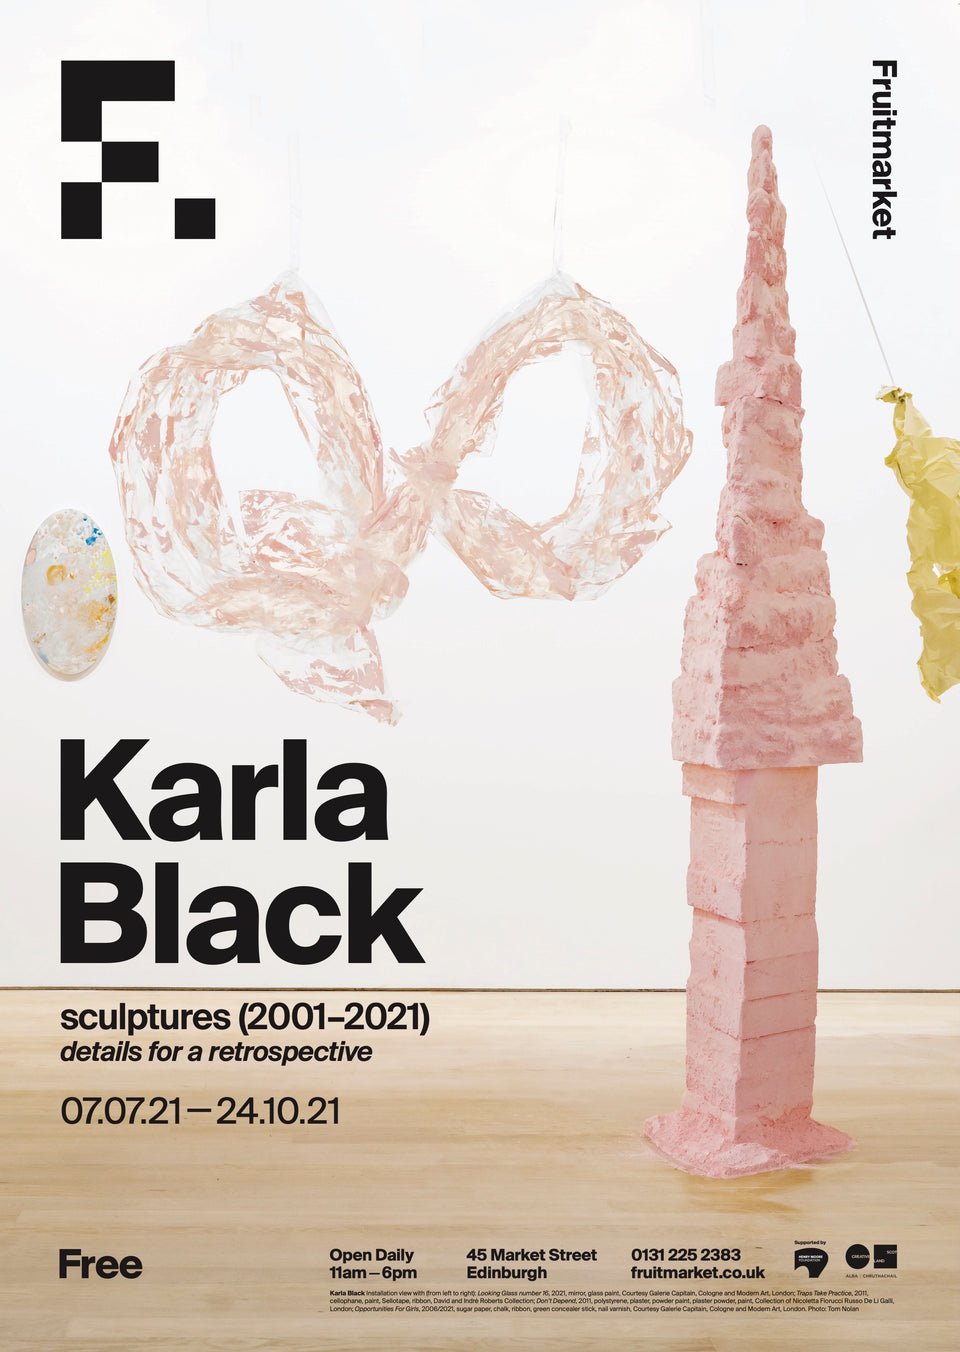 Karla Black sculptures (2001-2020) details for a restrospective Poster